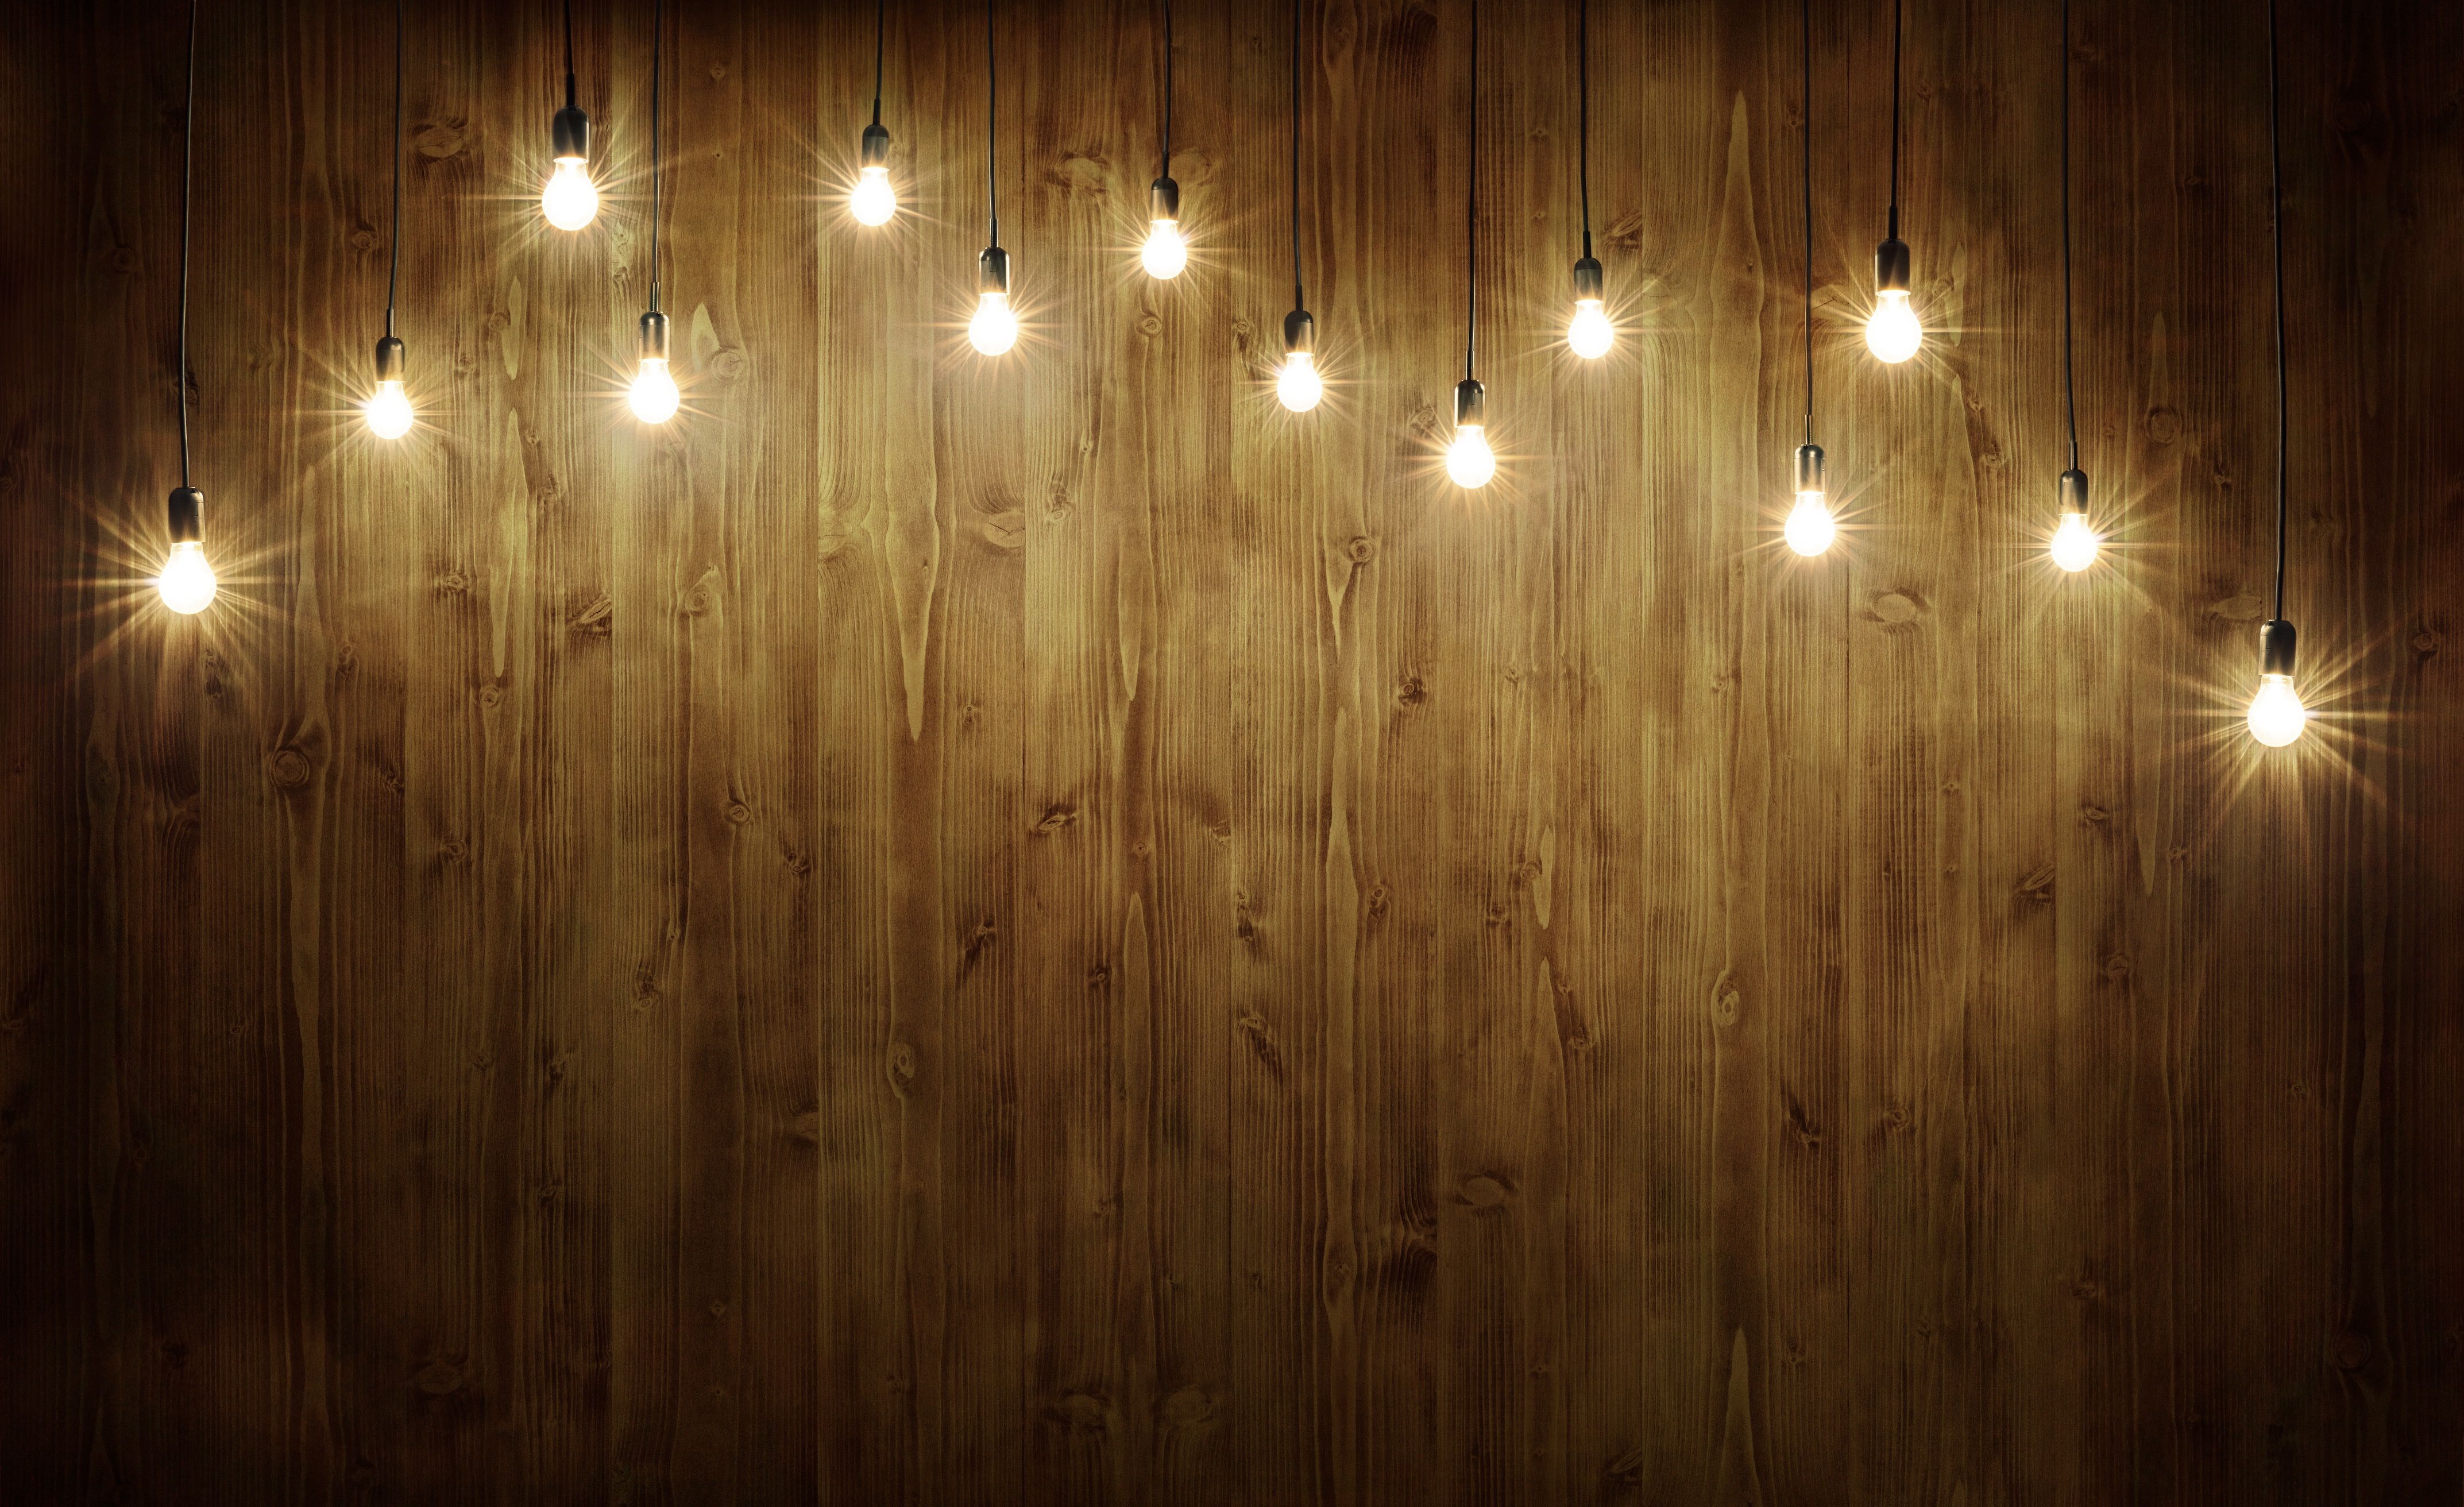 Tải miễn phí hình nền gỗ 10x10 với bóng đèn màu xanh lá cây: Tận hưởng một không gian xanh mát với hình nền gỗ 10x10 và bóng đèn màu xanh lá cây đầy tươi sáng. Tải miễn phí ngay để trang trí thiết bị của bạn với thiết kế độc đáo và thanh lịch này.